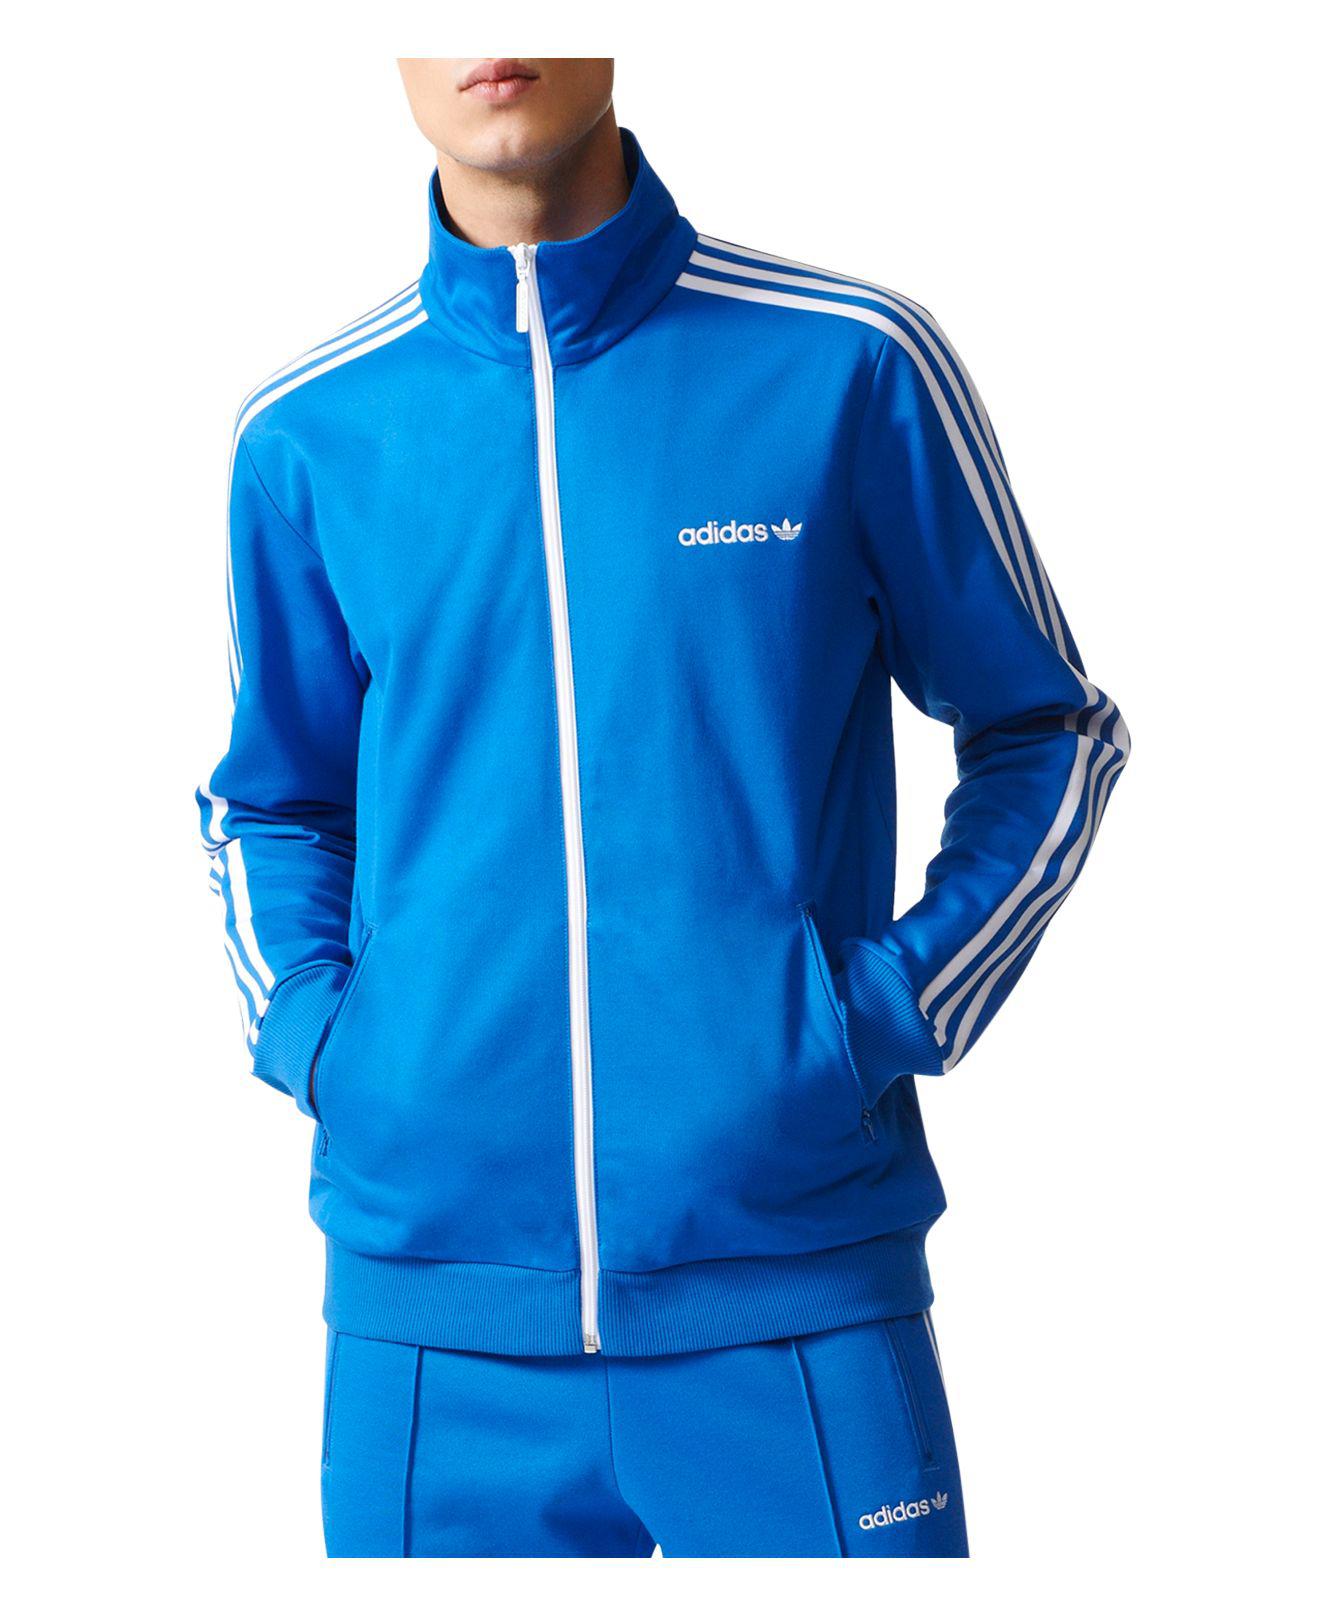 adidas Originals Beckenbauer Track Jacket in Blue for Men - Lyst